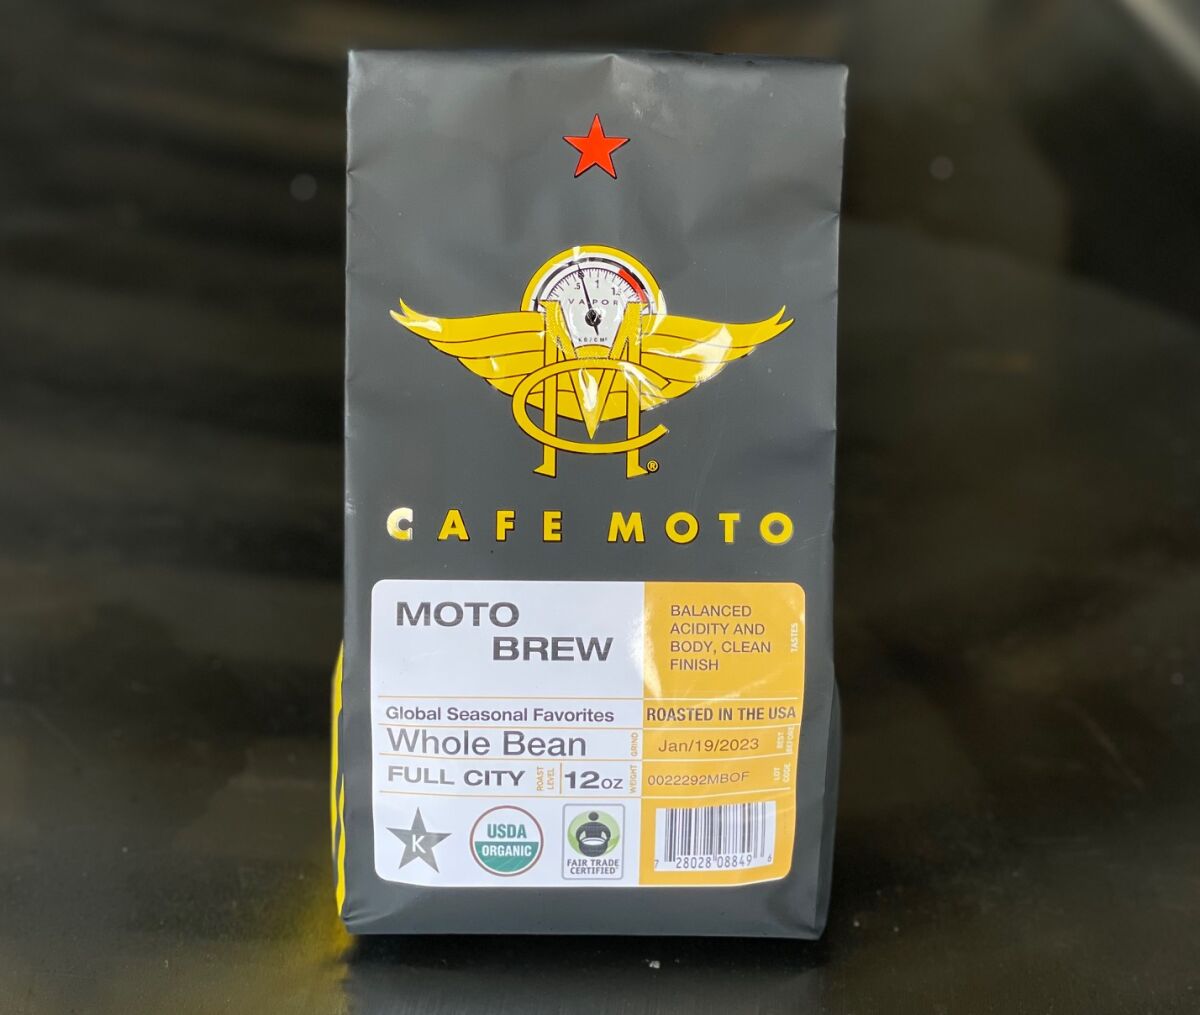 Cafe Moto's original Moto Brew